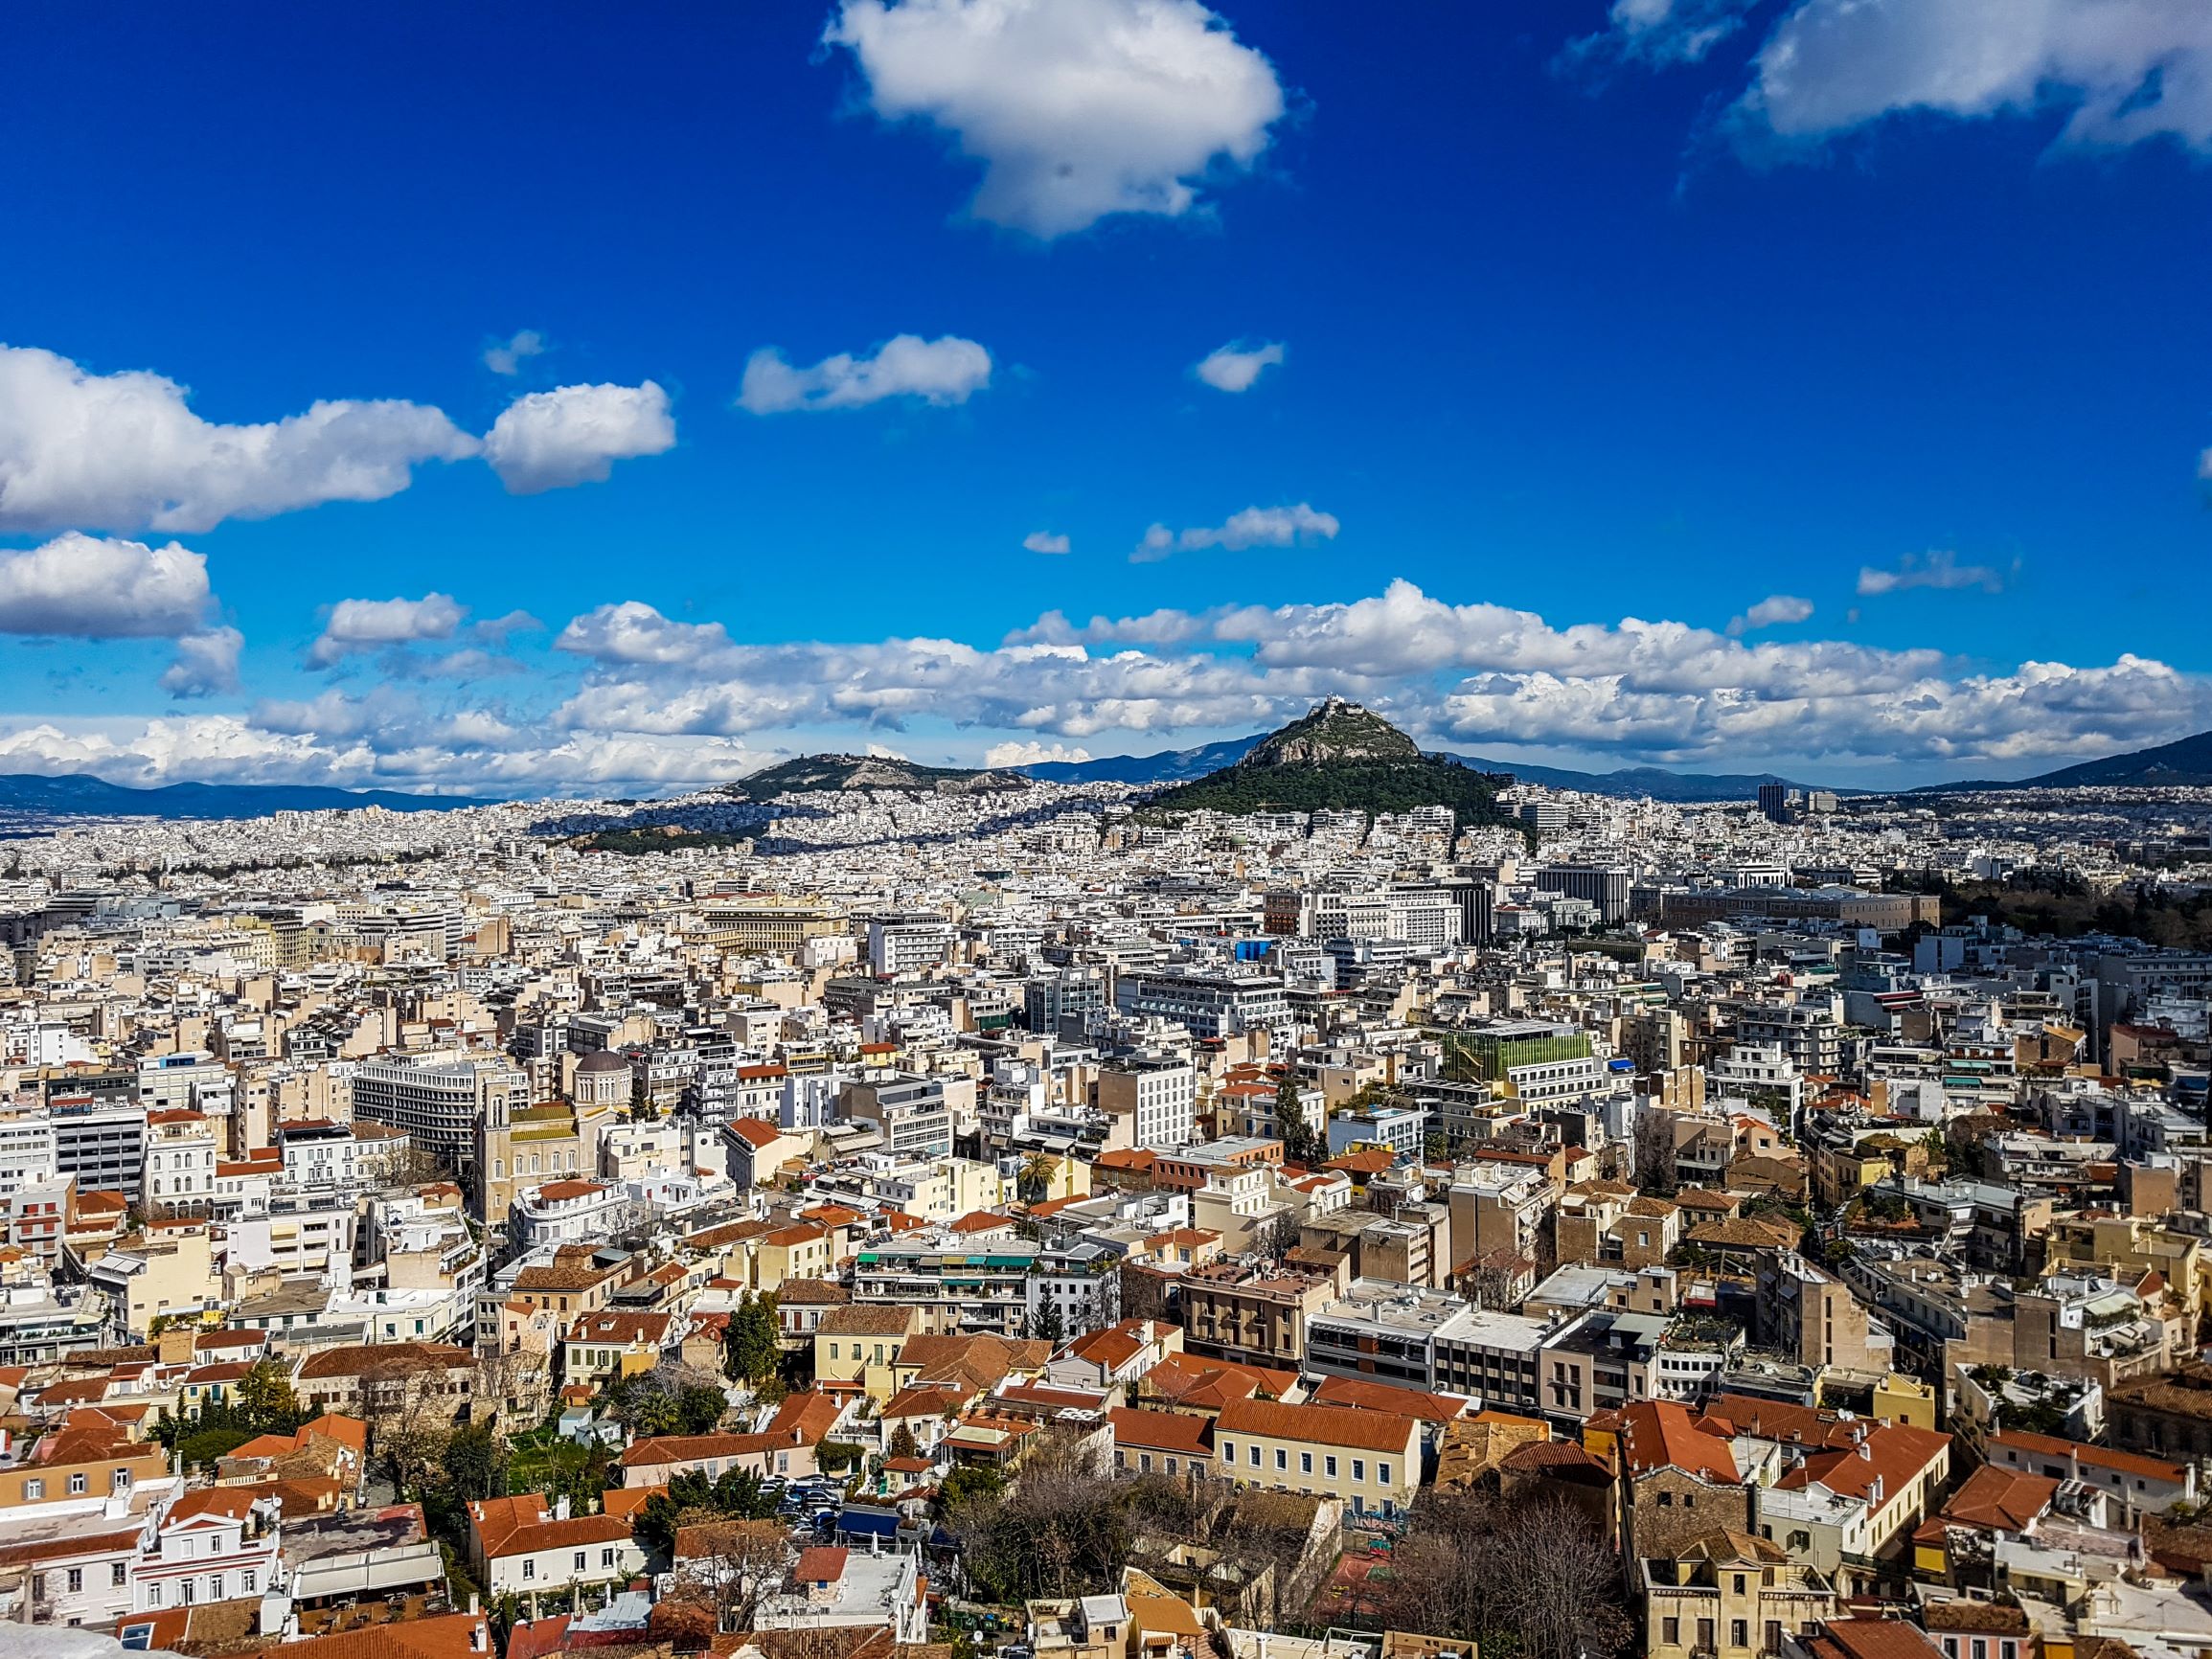 Ξεκινάει το πρόγραμμα “Προσοψη” κτιρίων Αθήνας – Ποια τα ποσά επιδότησης